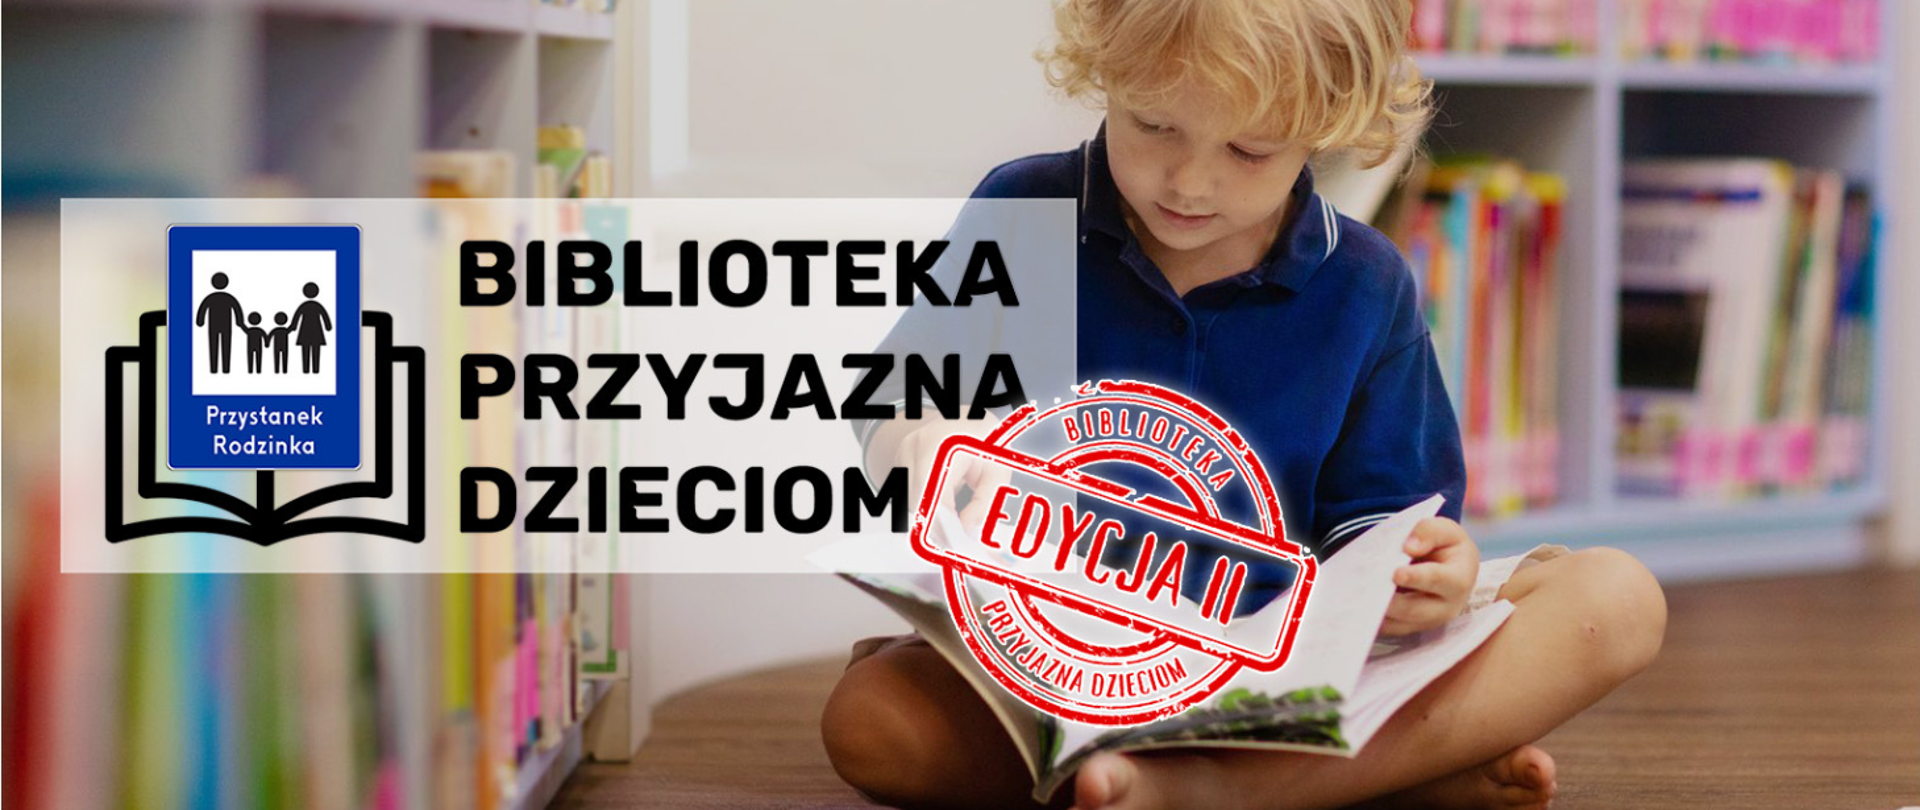 Kilkuletni chłopiec siedzi na podłodze, nogi skrzyżowane na nich leży książka. Z lewej strony logo i napis Bbiblioteka przyjazna dzieciom"